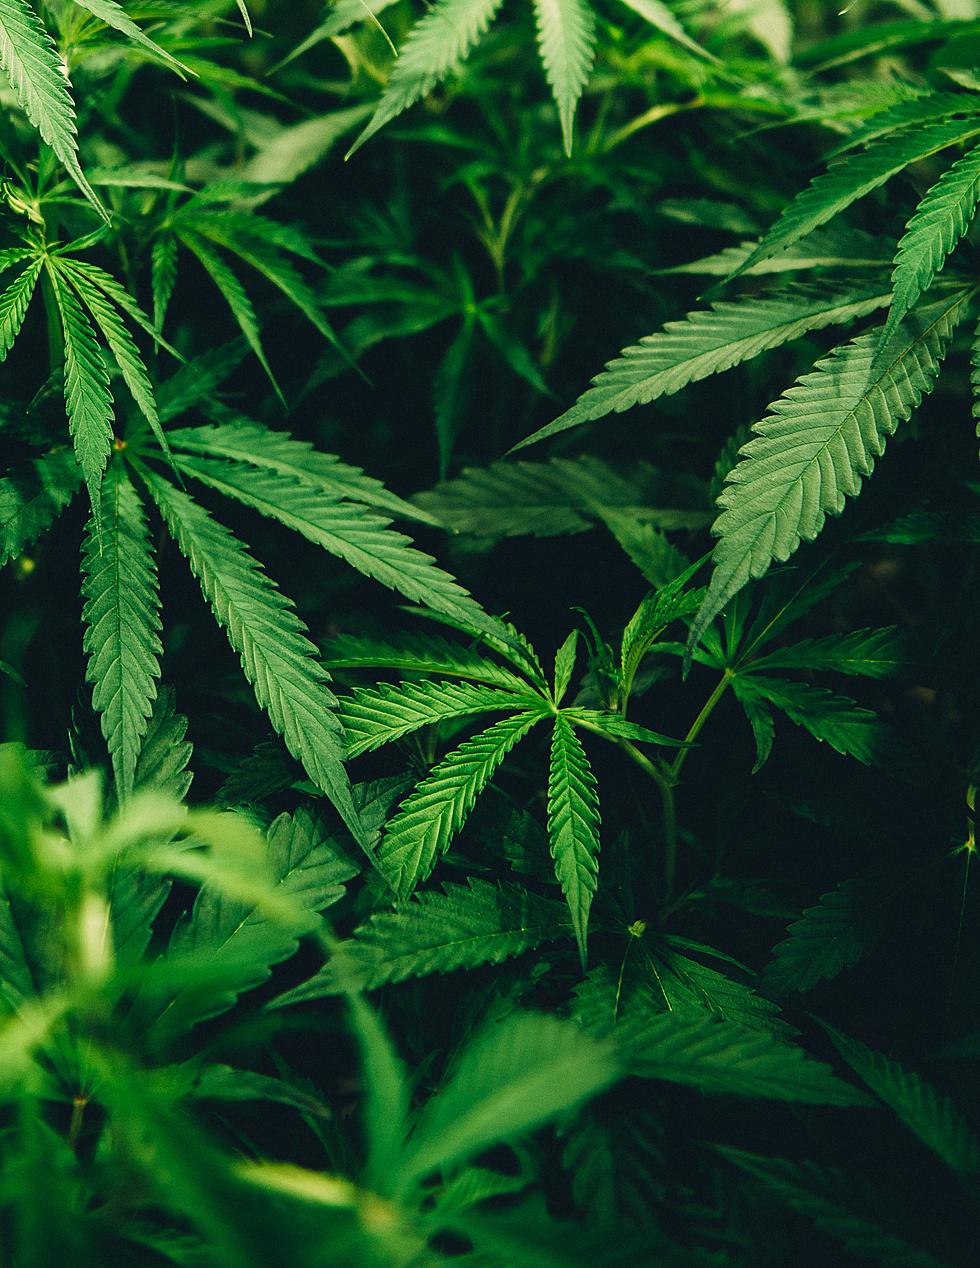 Marijuana Plants Seized from ‘Tent Sale’ in Minnesota Town